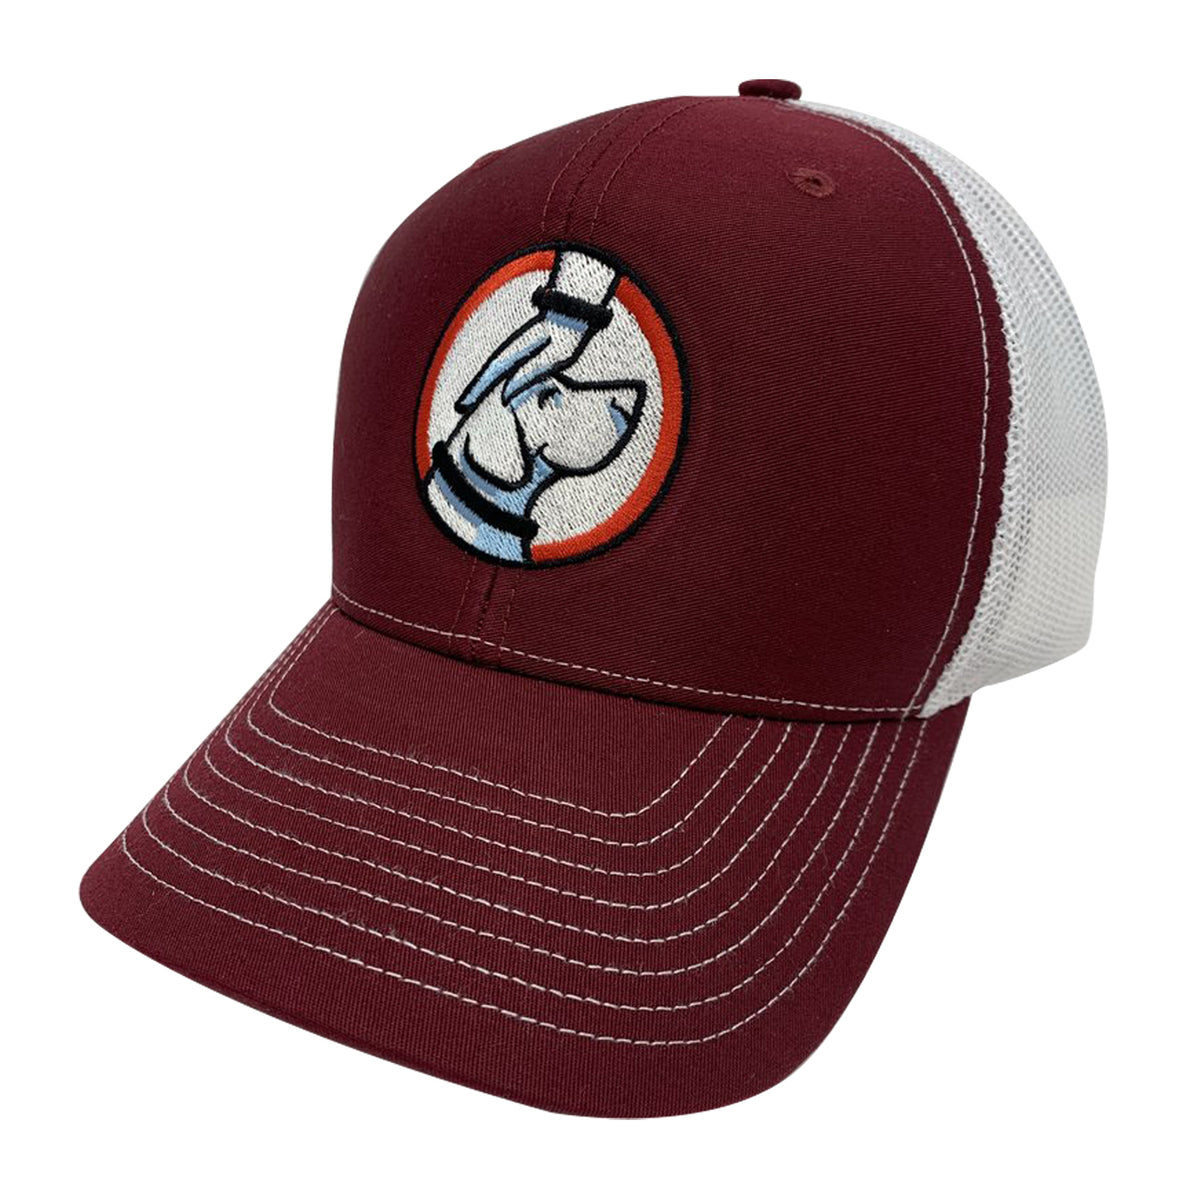 Tampa Bay Buccaneers trucker hat